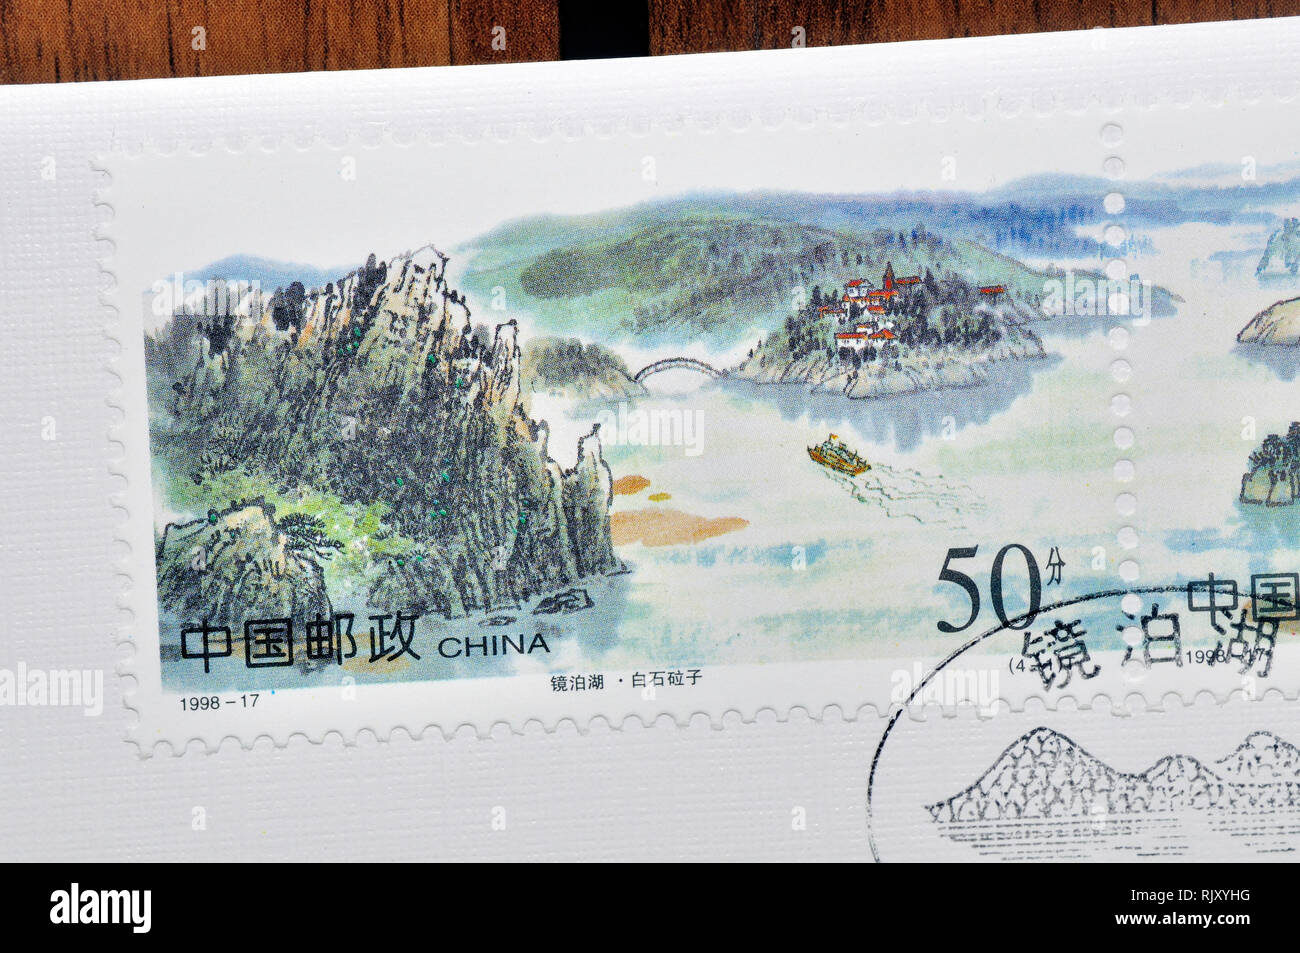 CHINA - CIRCA 1998: A stamp printed in China shows 1998-17 Jingpo Lake, circa 1998 Stock Photo